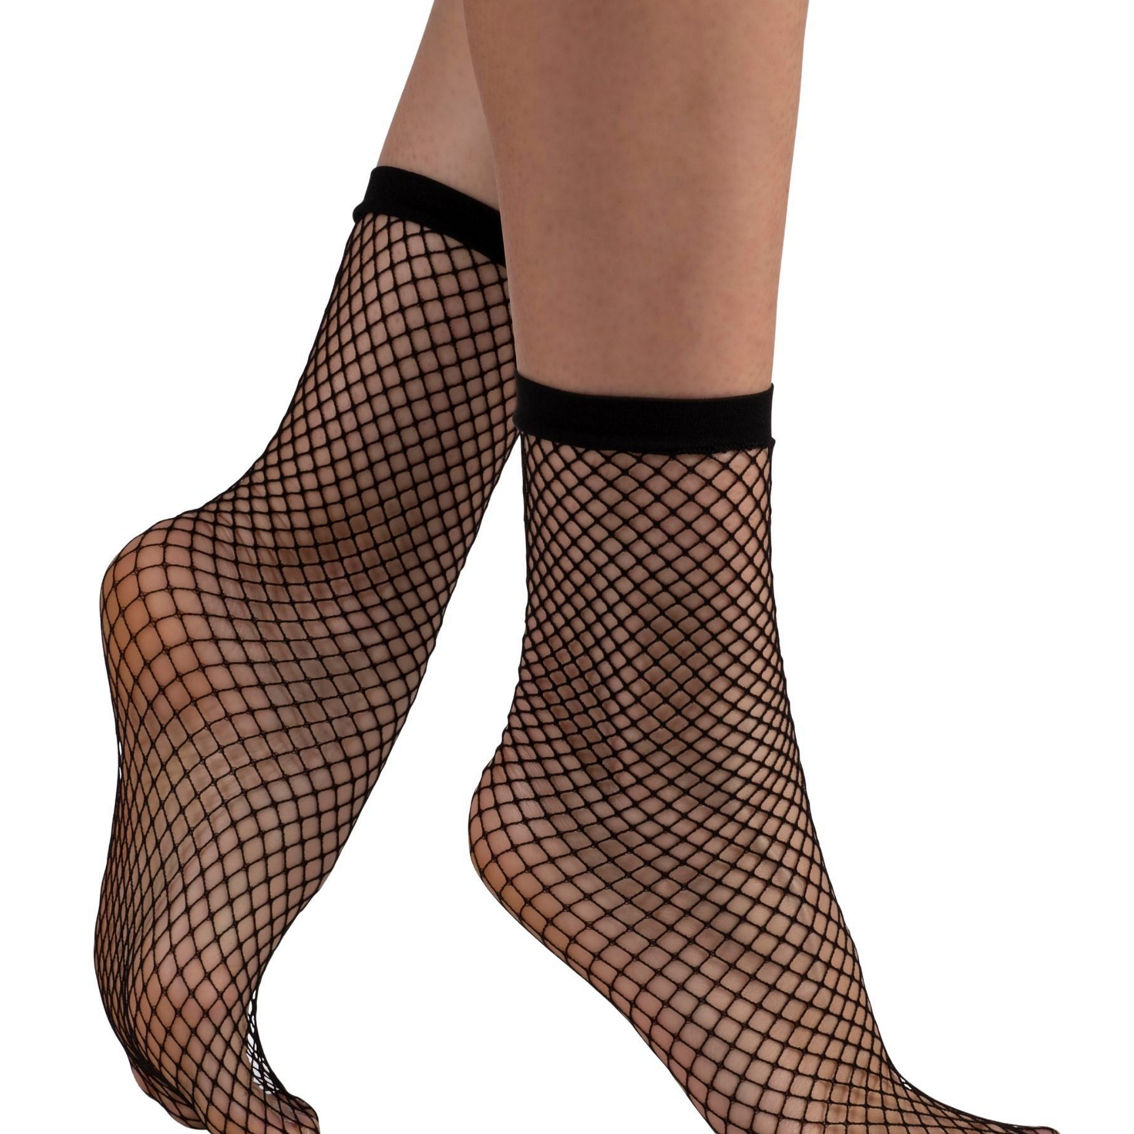 LECHERY Fishnet Socks (2 Pack) - Image 2 of 4